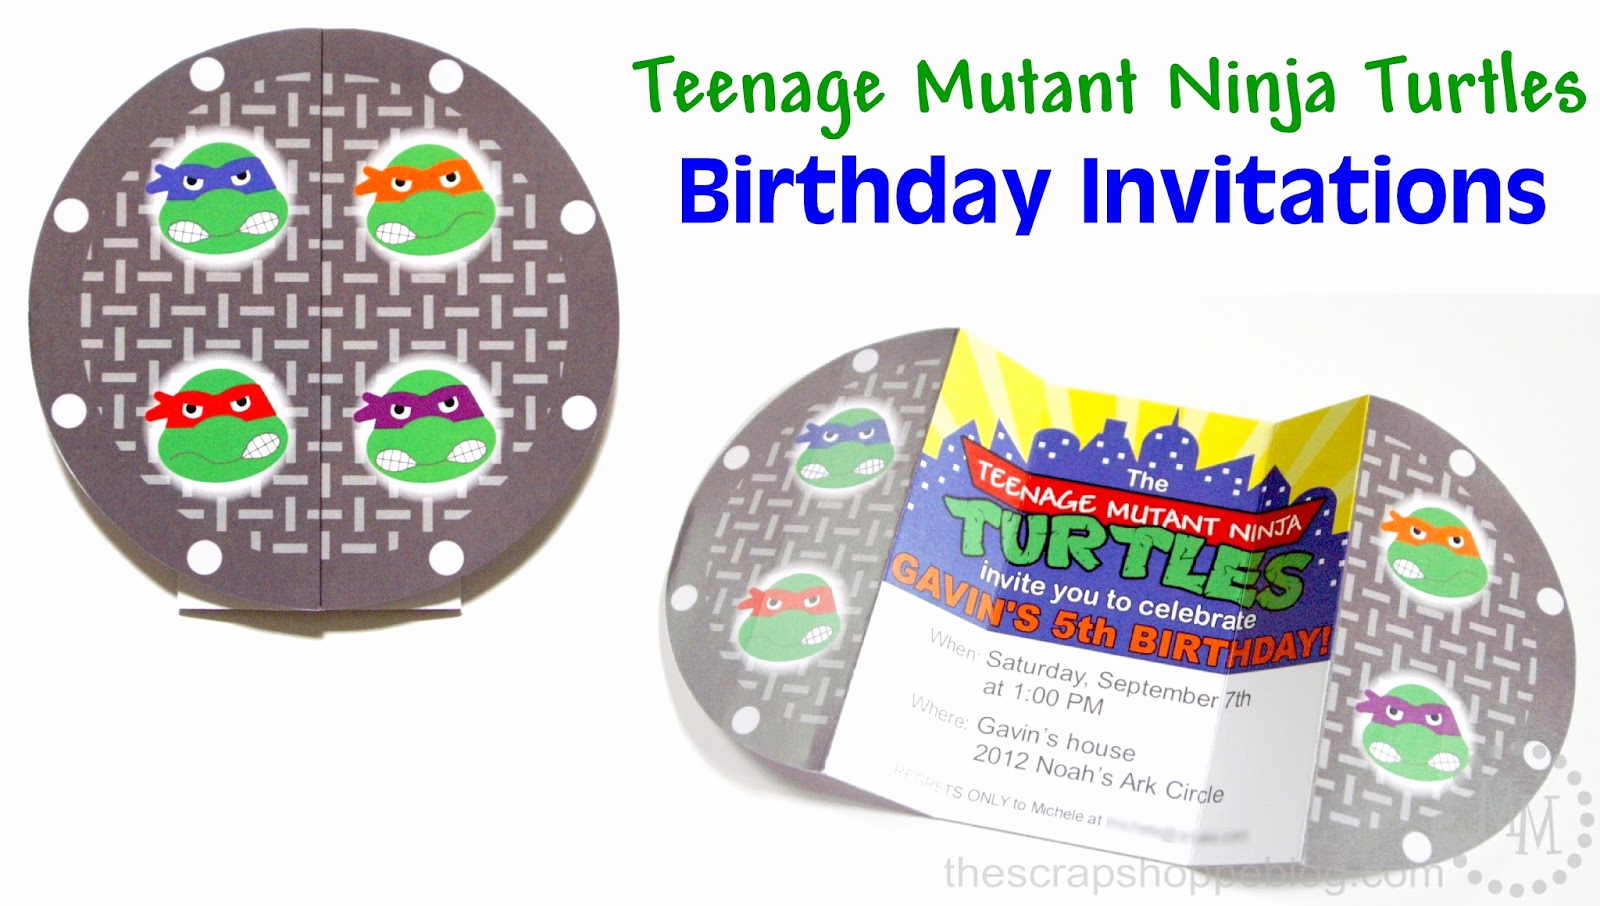 Ninja Turtle Birthday Invitation Template Awesome Teenage Mutant Ninja Turtles Tmnt Birthday Invitations